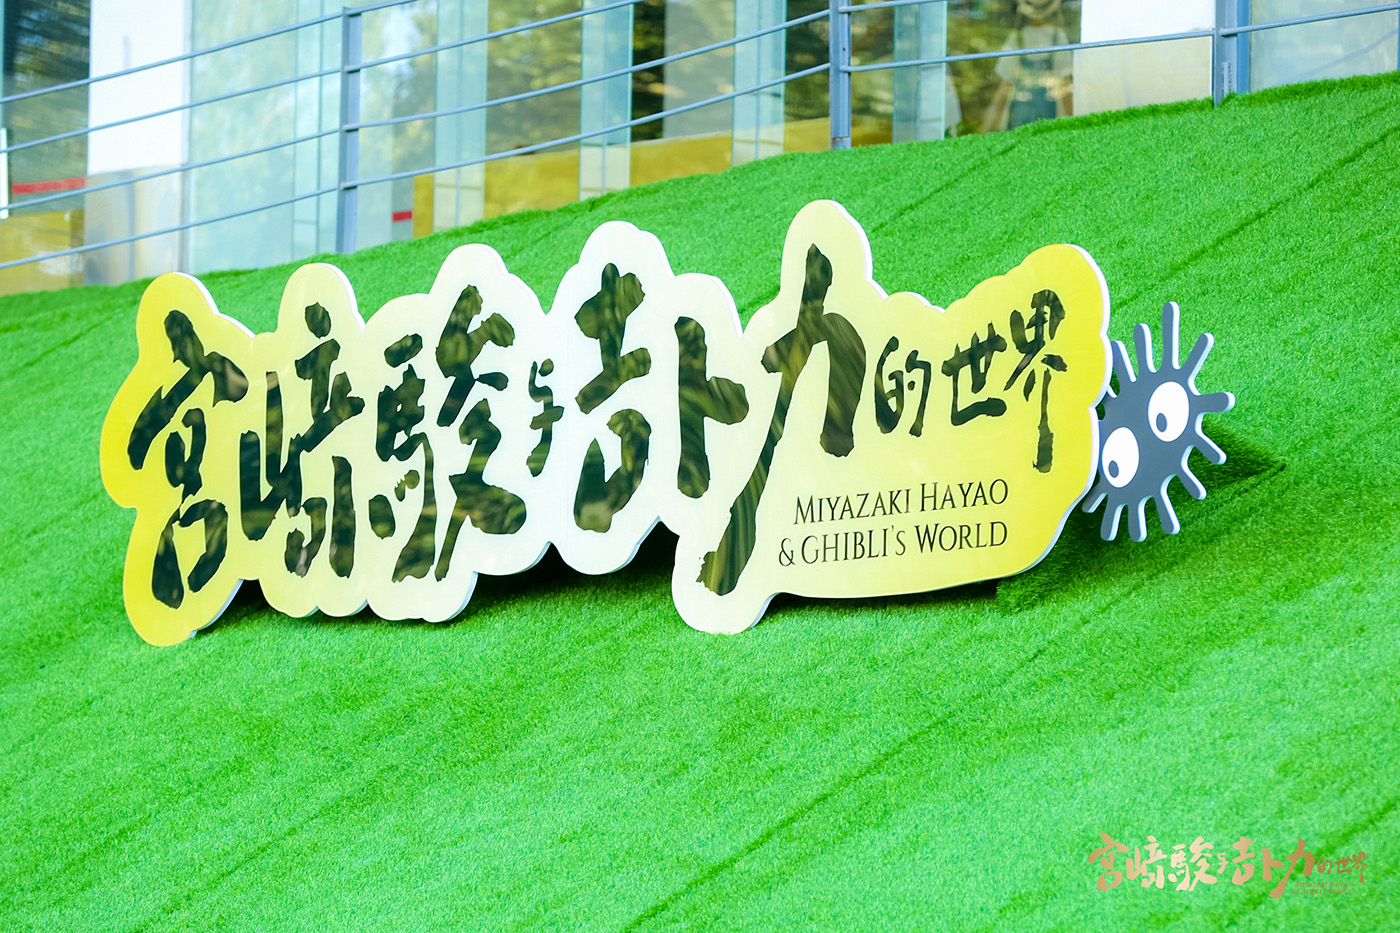 宮崎駿與吉蔔力的世界 動畫藝術展